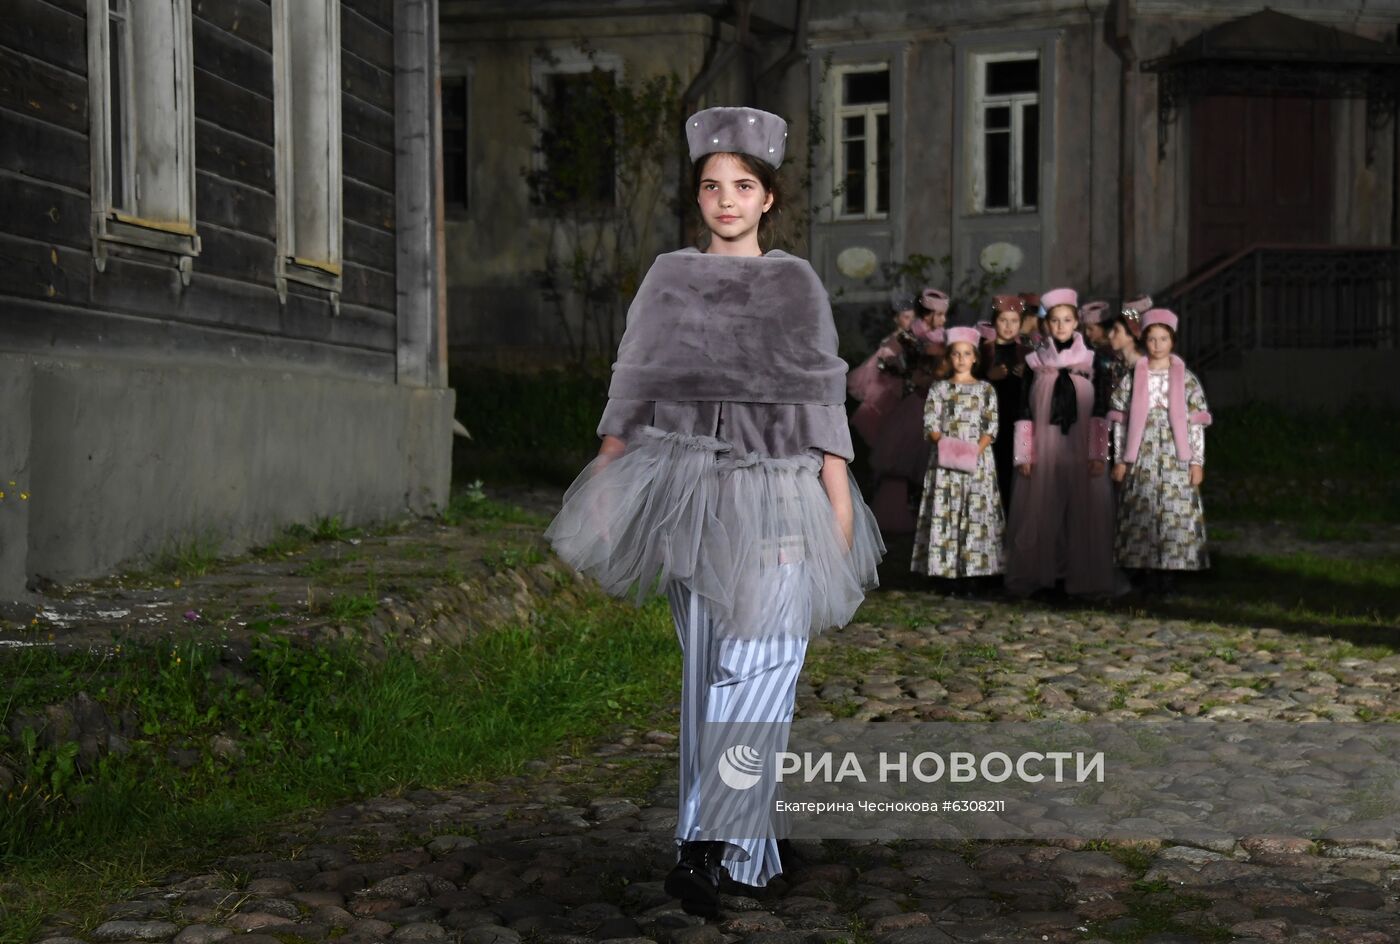 Показ детской моды в формате киносъемки в Москве  